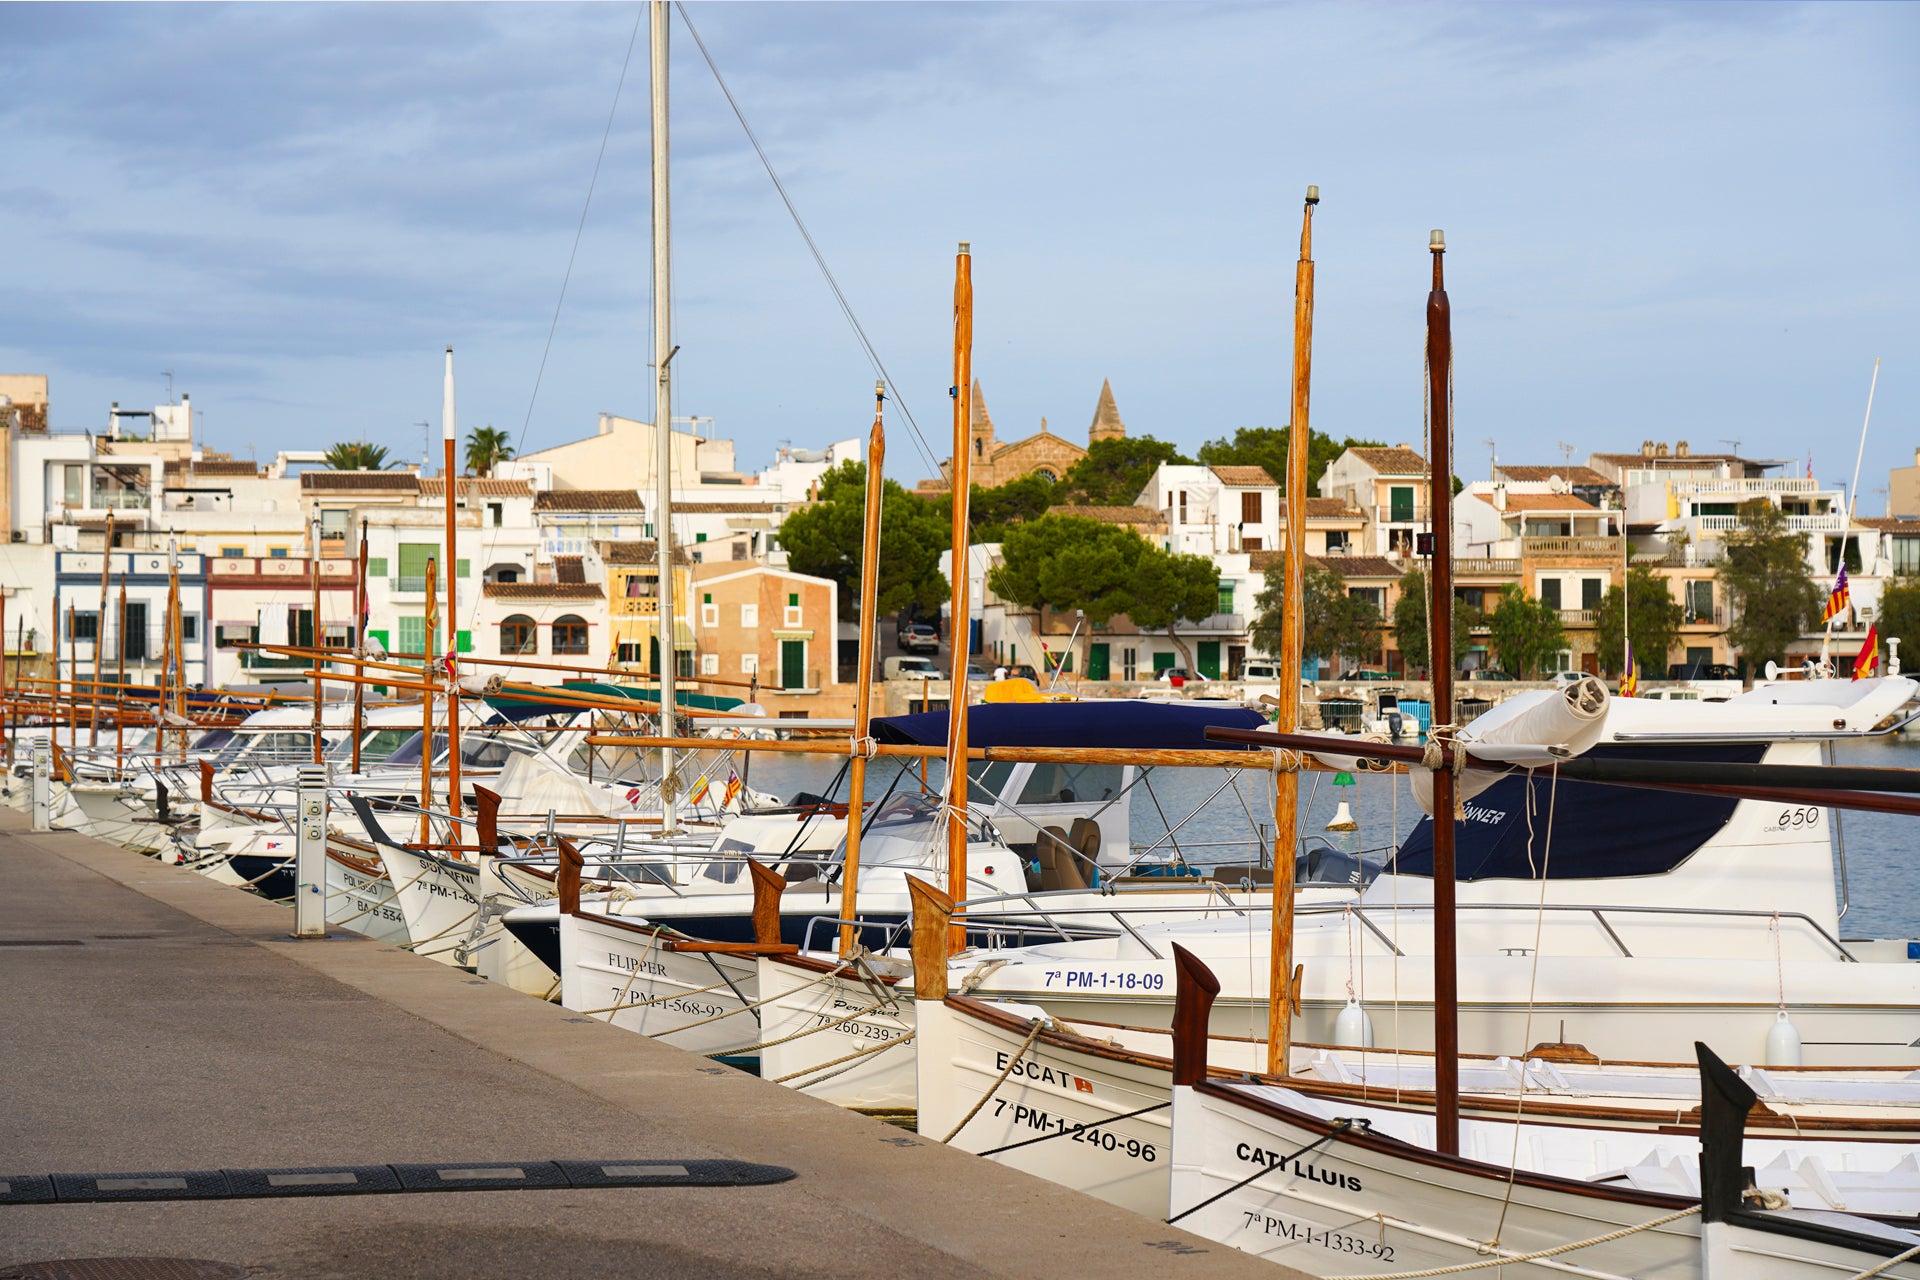 Imbarcazioni e barche a vela in un tipico porto della Spagna